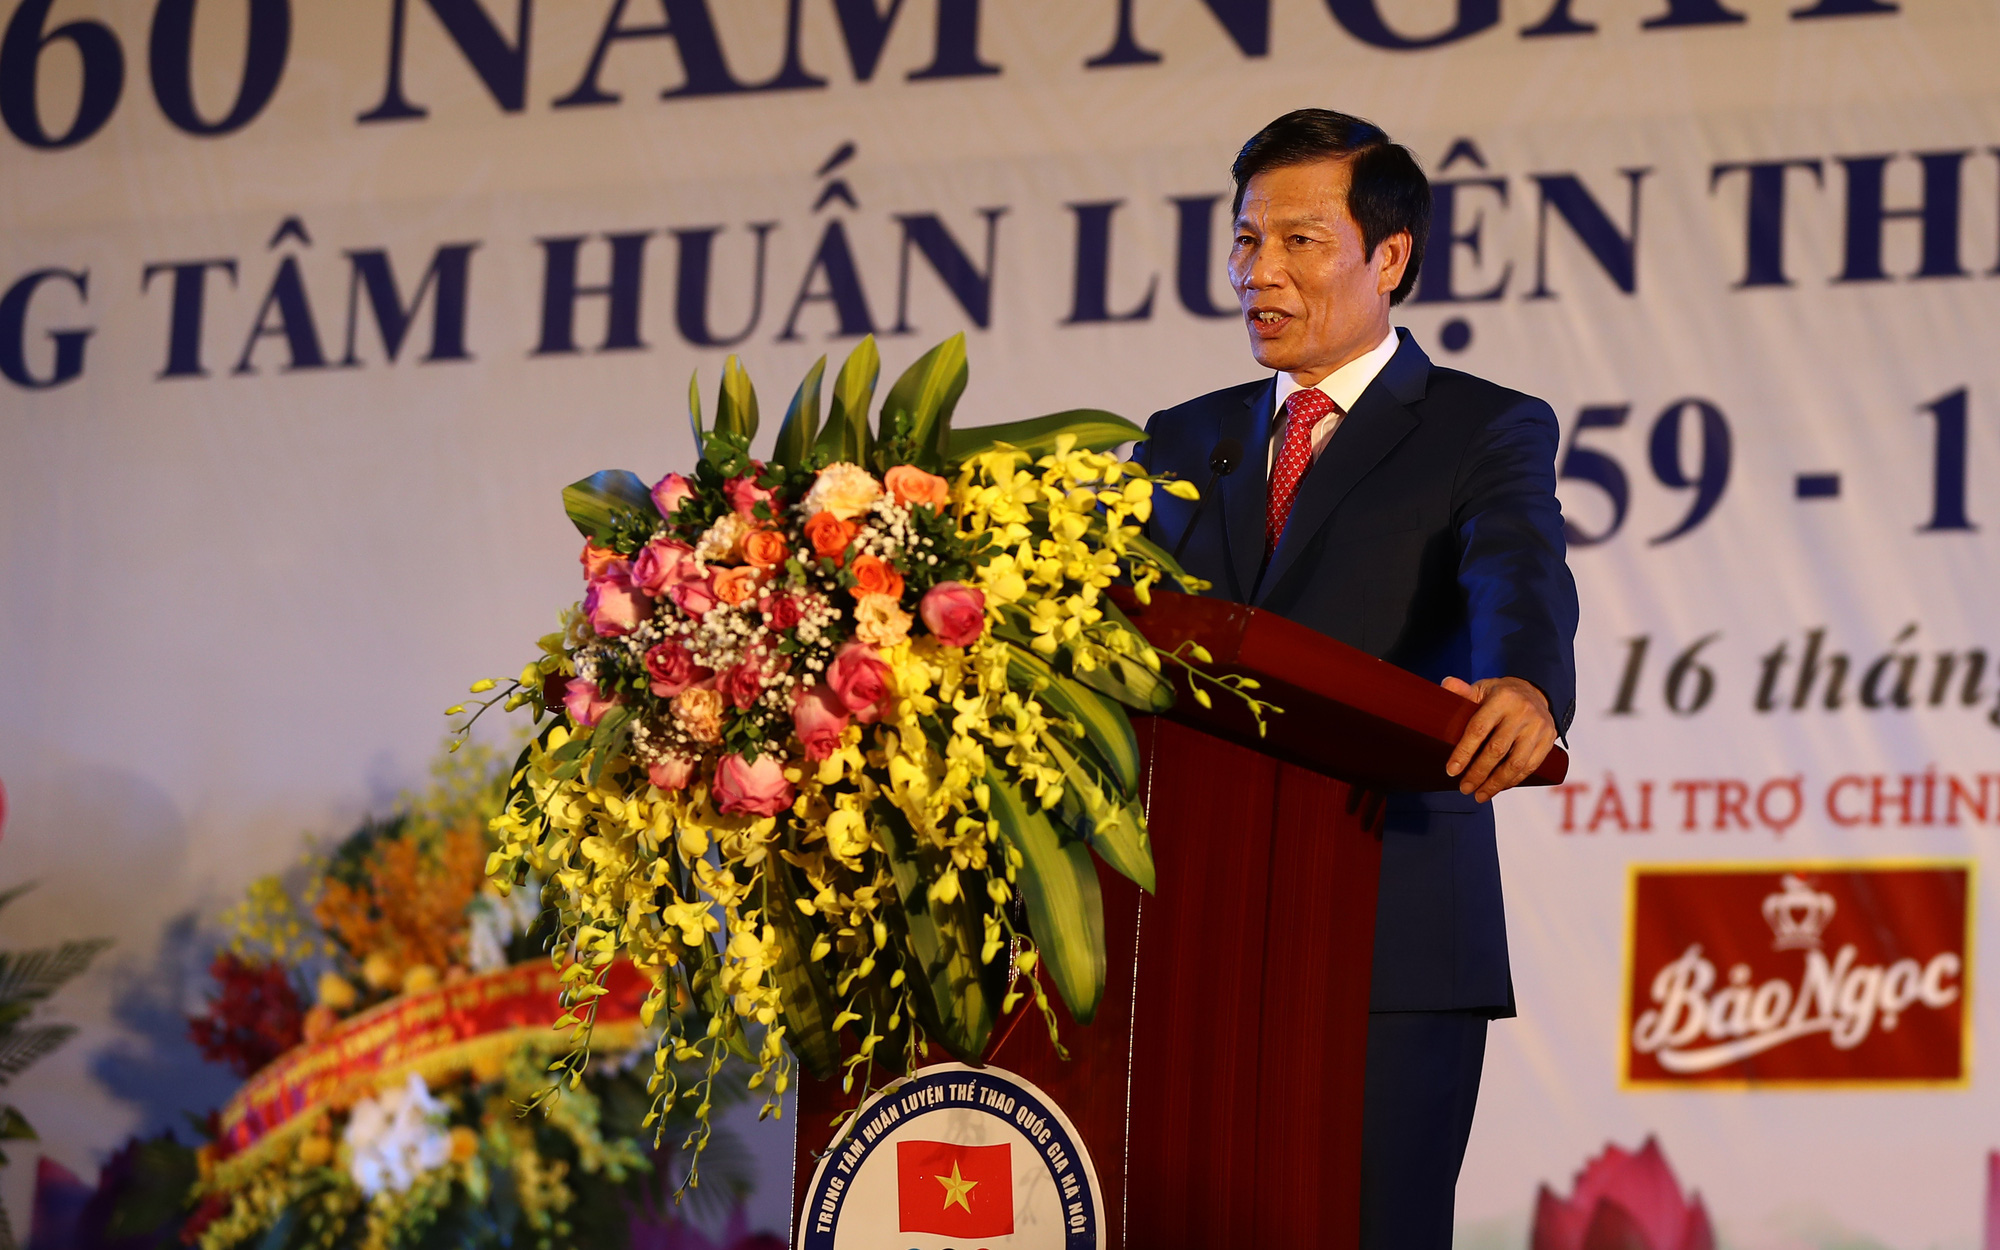 Bộ trưởng Nguyễn Ngọc Thiện: Trung tâm Huấn luyện thể thao quốc gia Hà Nội đã đóng góp rất lớn cho Thể thao Việt Nam